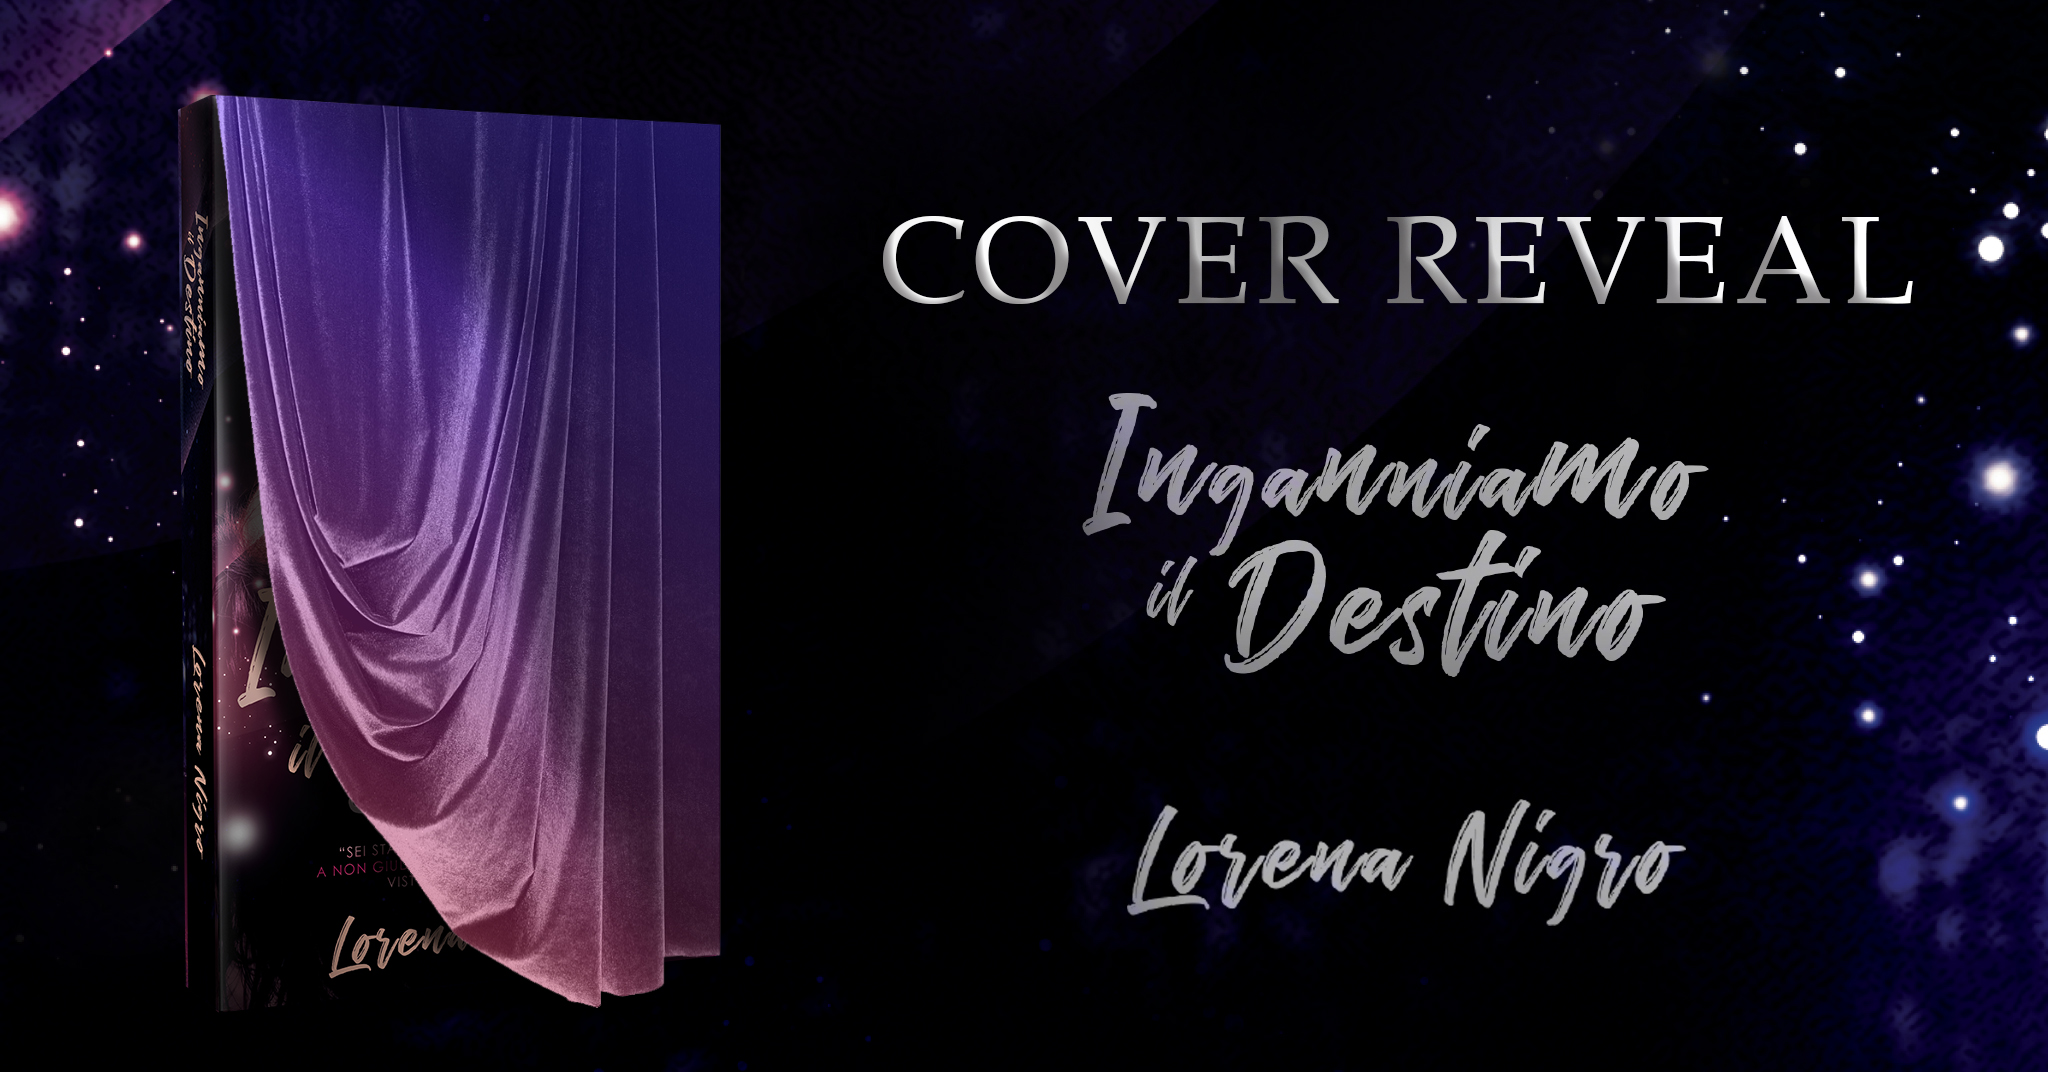 Cover Reveal “Inganniamo il destino” di Lorena Nigro